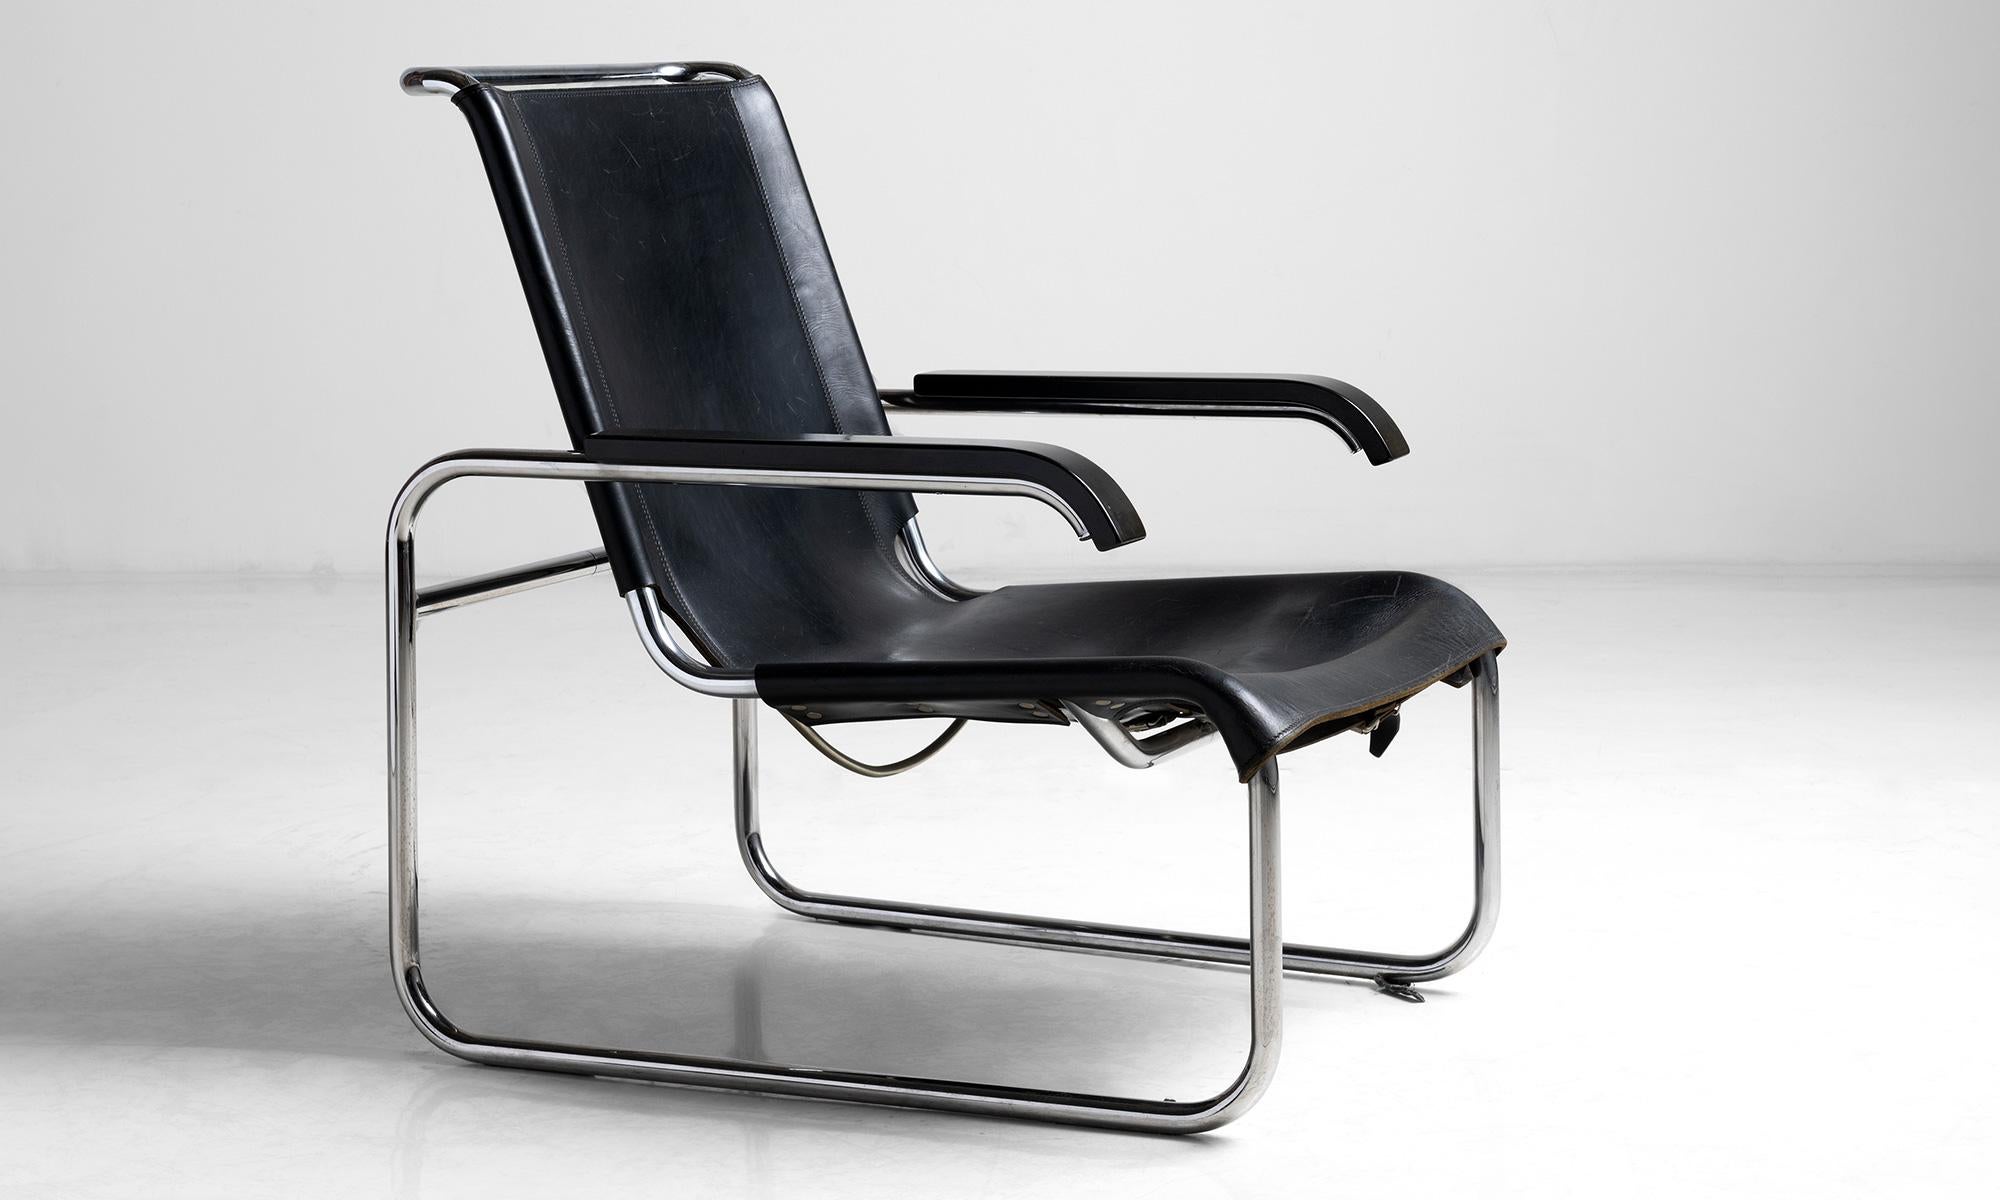 Salon en cuir Marcel Breuer

Allemagne, vers 1970

Chaise longue modèle B35 produite par Thonet avec cuir de buffle d'origine sur une structure en tube d'acier chromé.

Mesures : 25.5 